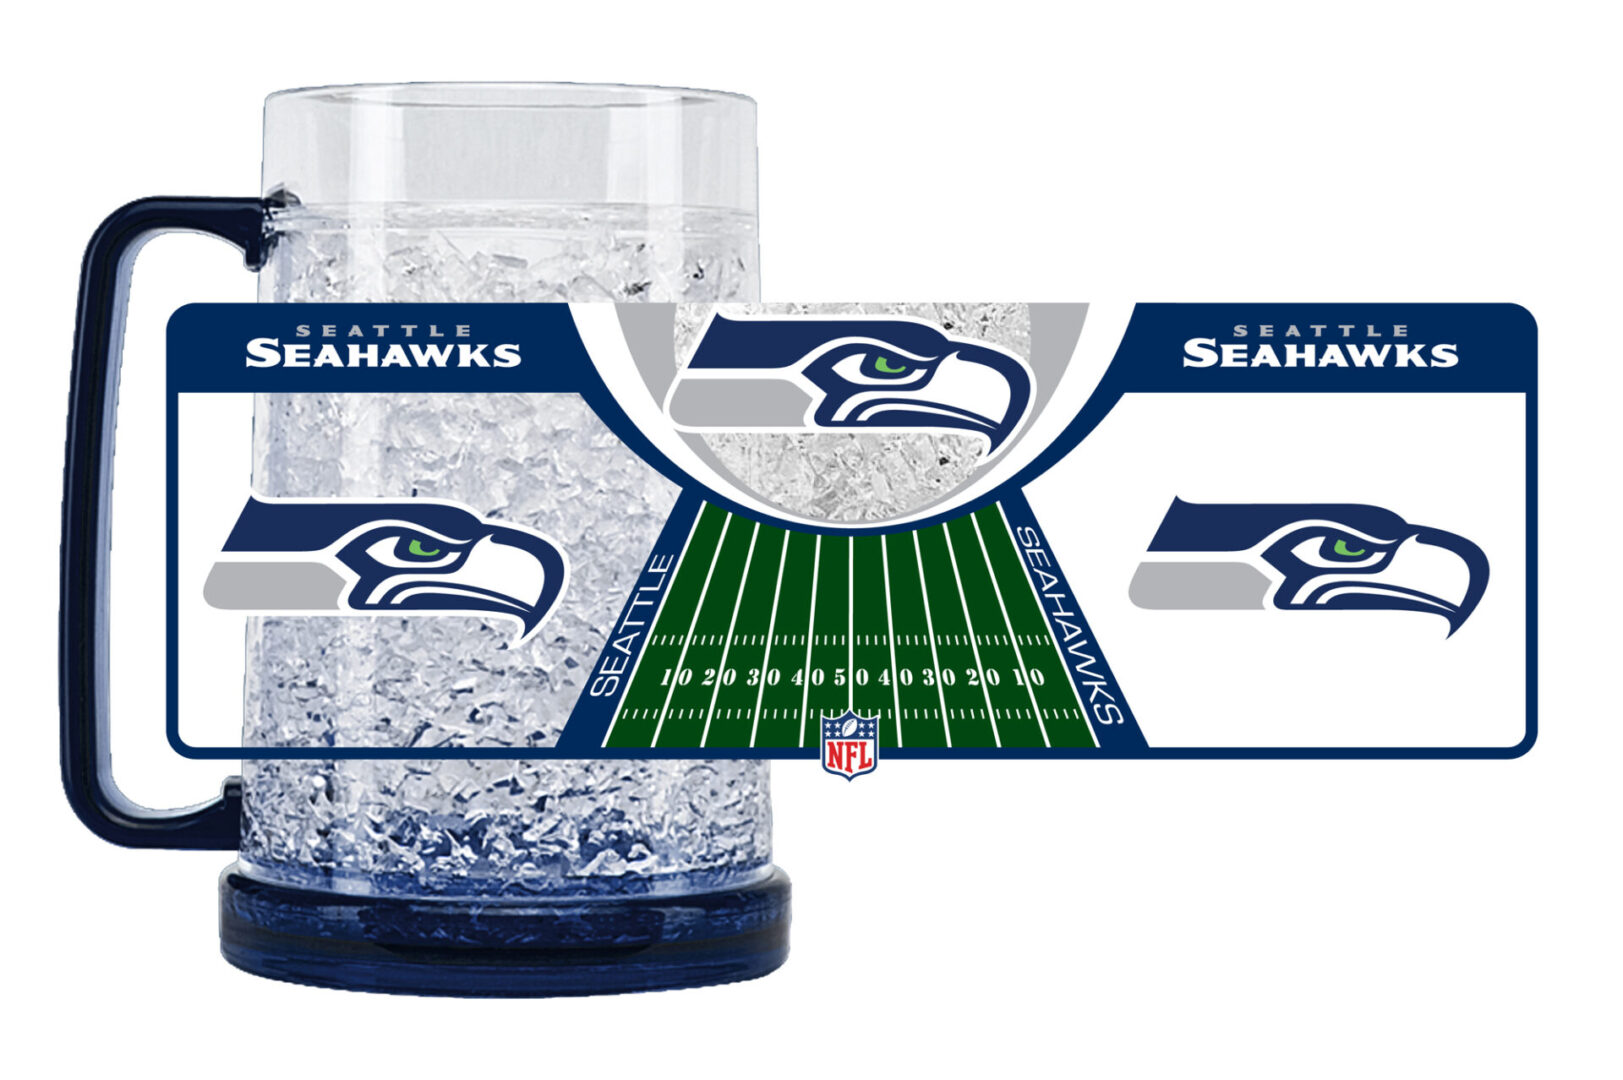 Seattle Seahawks large tankard mug